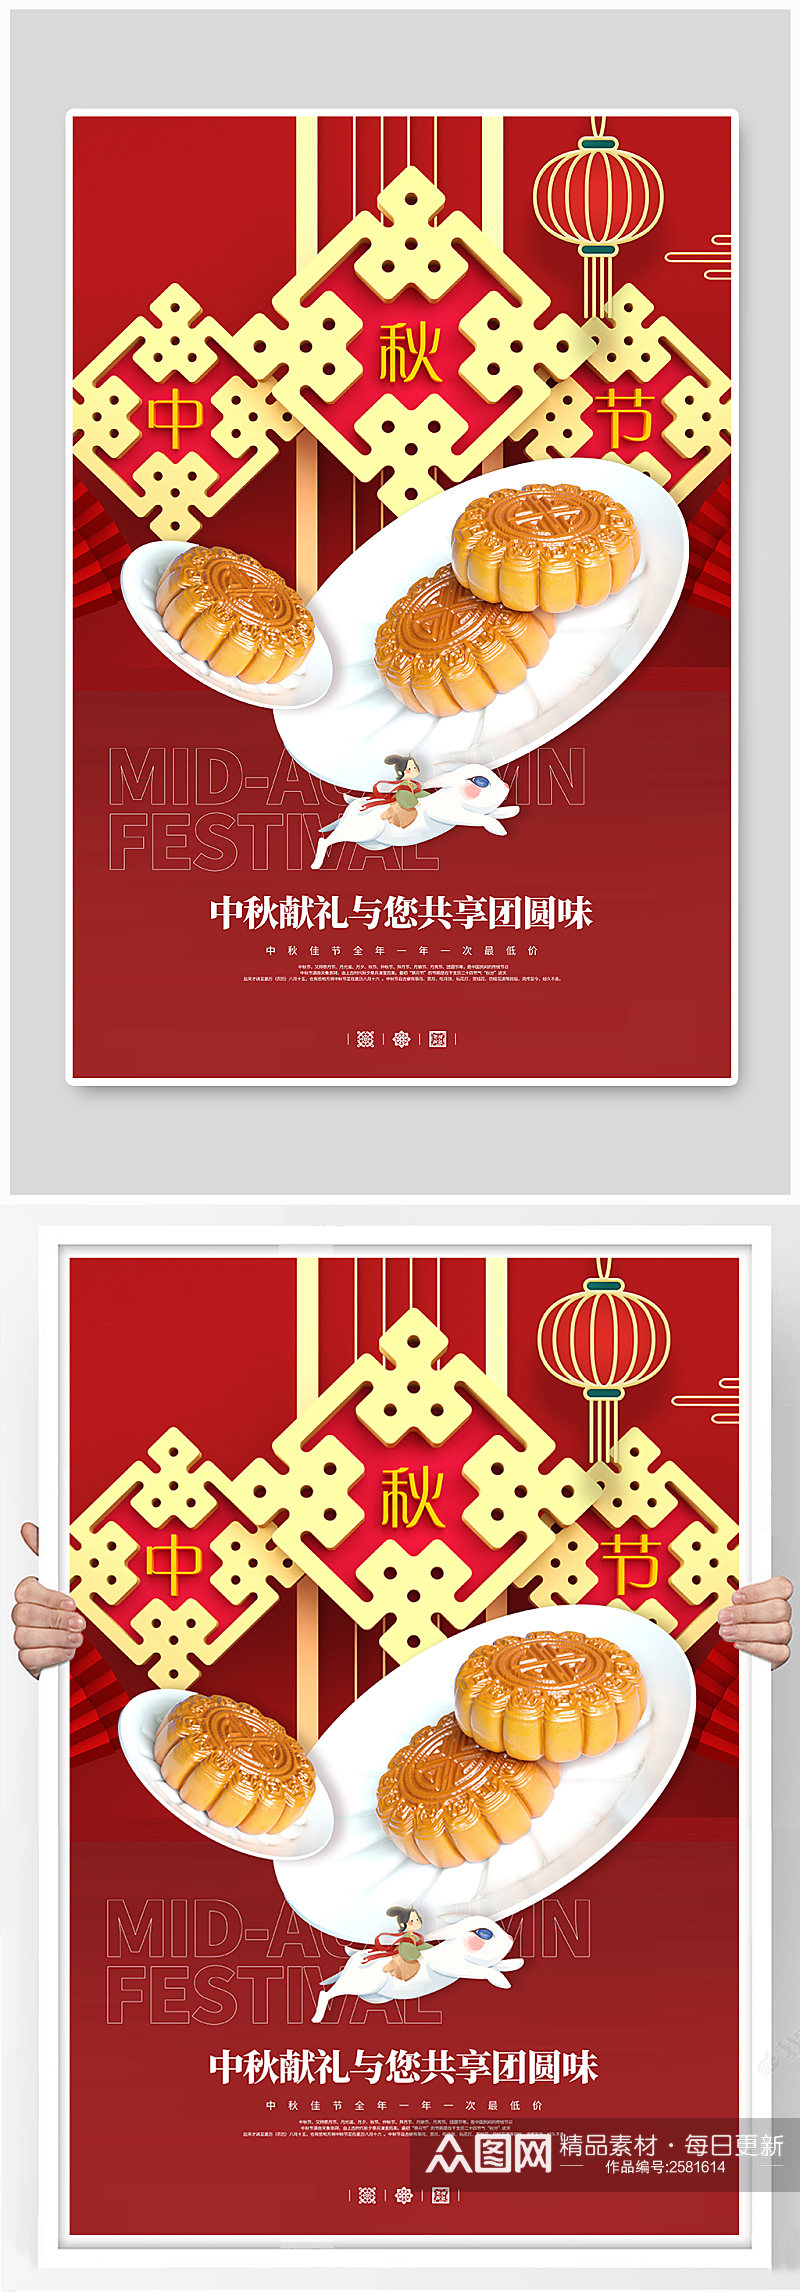 中秋节节宣传海报素材